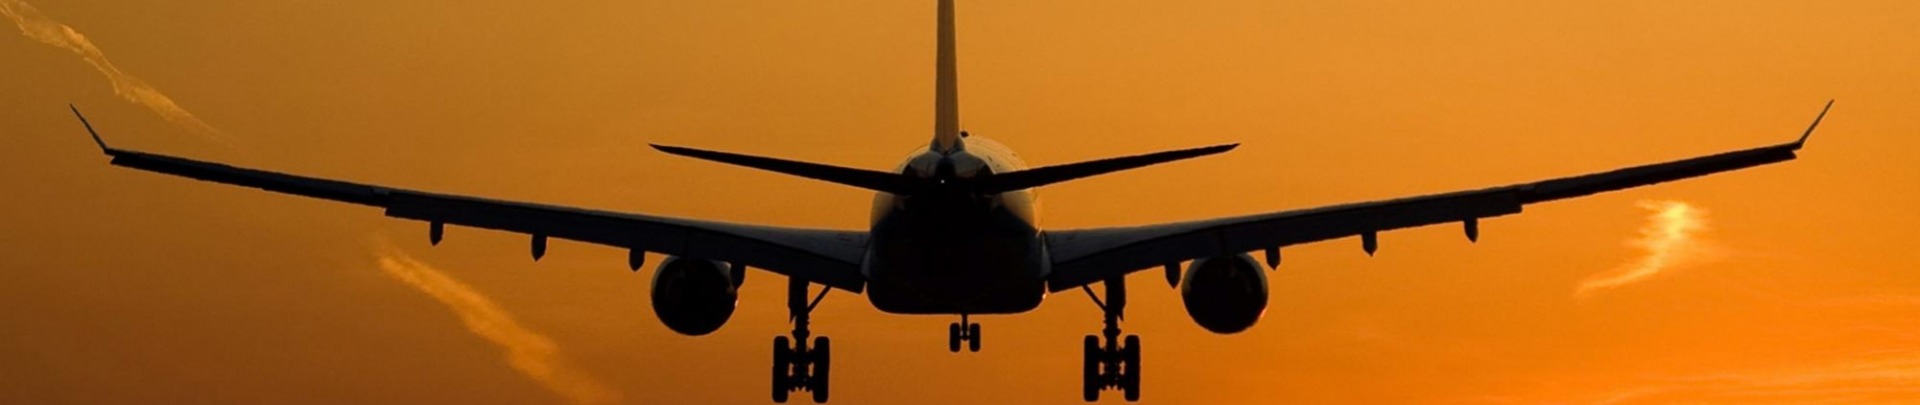 Vliegtuig land bij zonsondergang